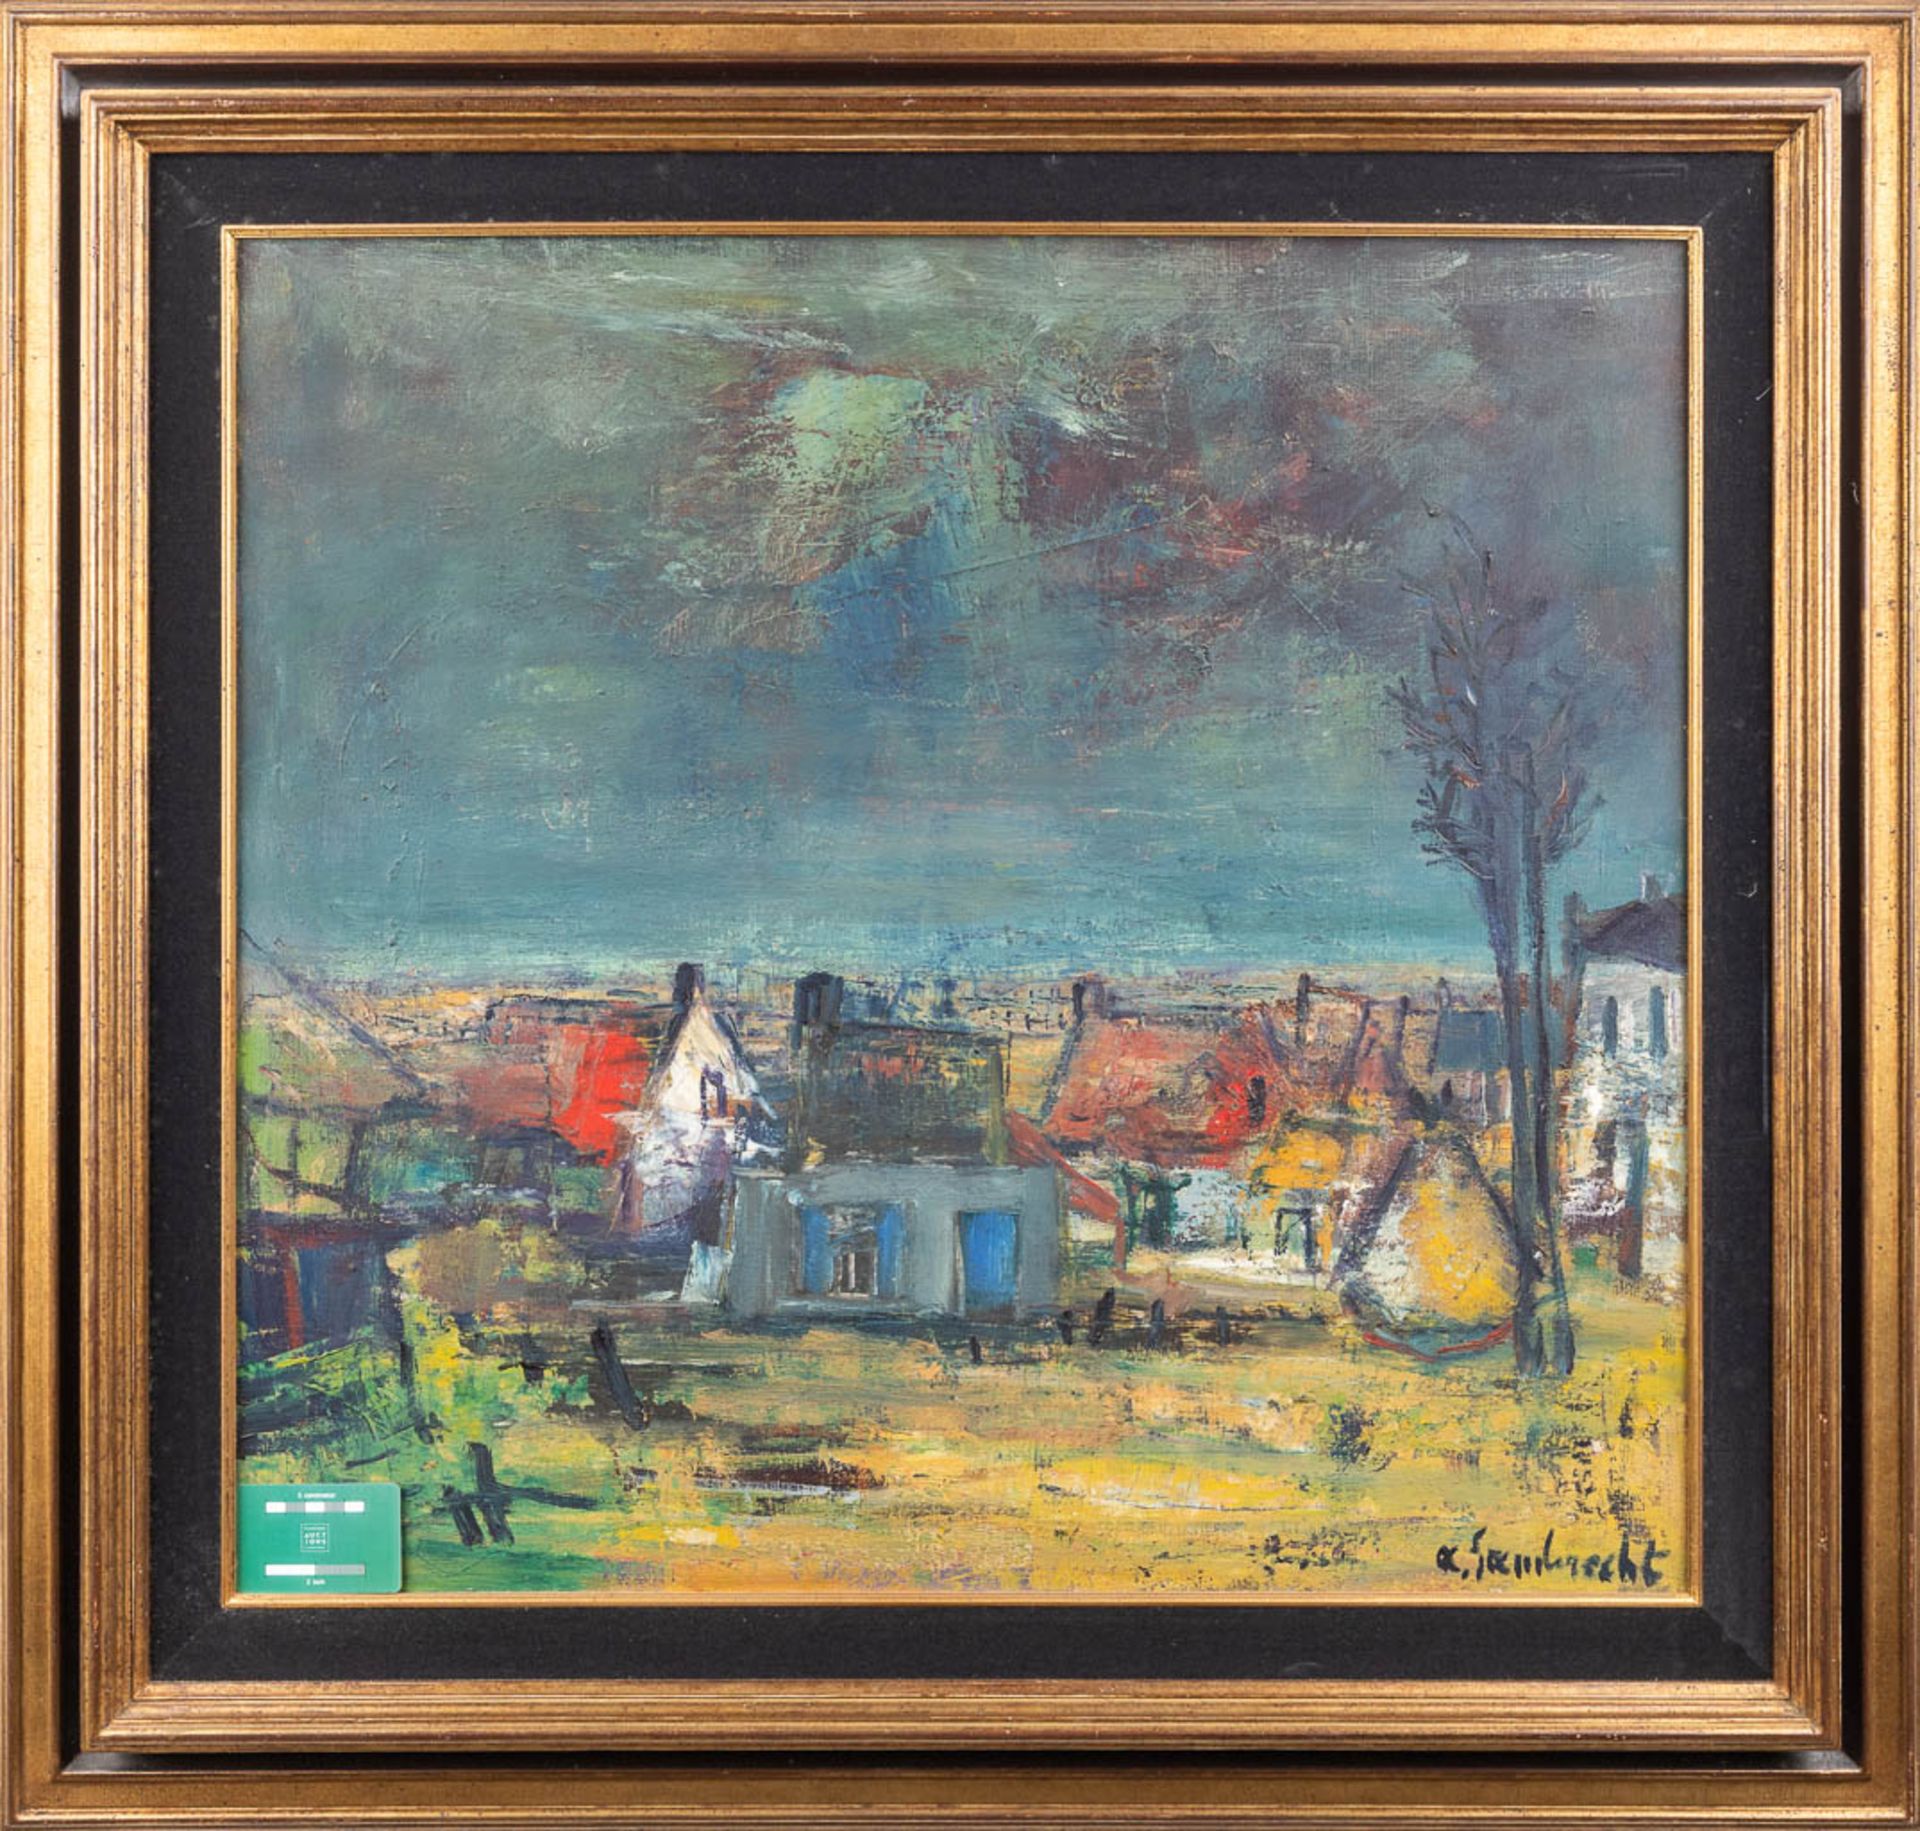 Arthur LAMBRECHT (1904-1983) 'Village View' oil on canvas. (W: 76 x H: 71 cm) - Image 2 of 6